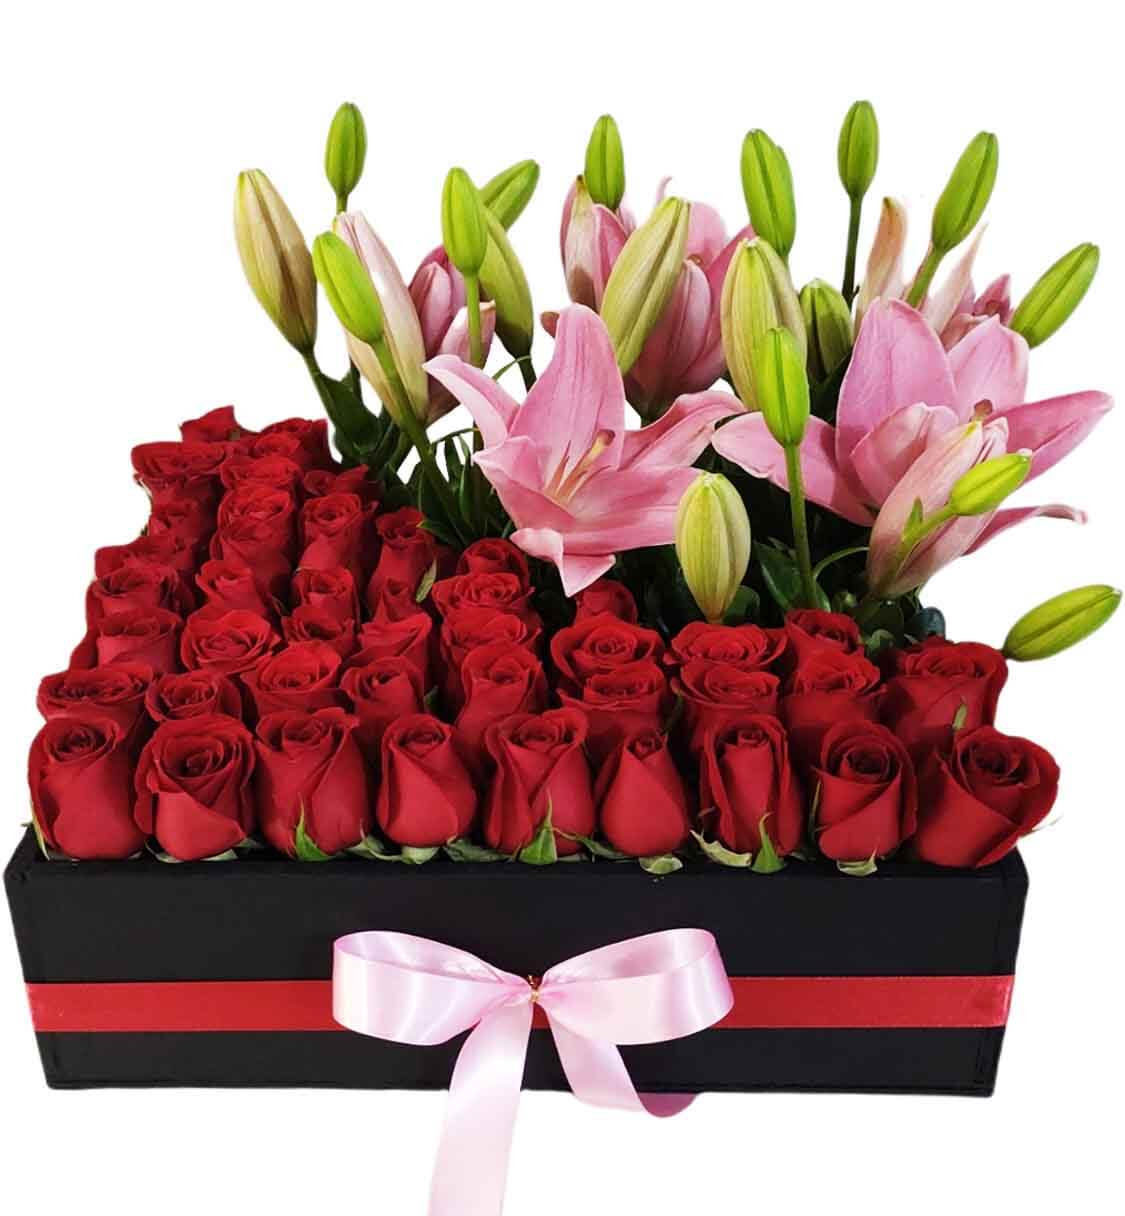 box con rosas y lilis rosadas Florería en Veracruz y Boca del Río: ¡Envío a domicilio! Encuentra las mejores flores y arreglos florales para cualquier ocasión